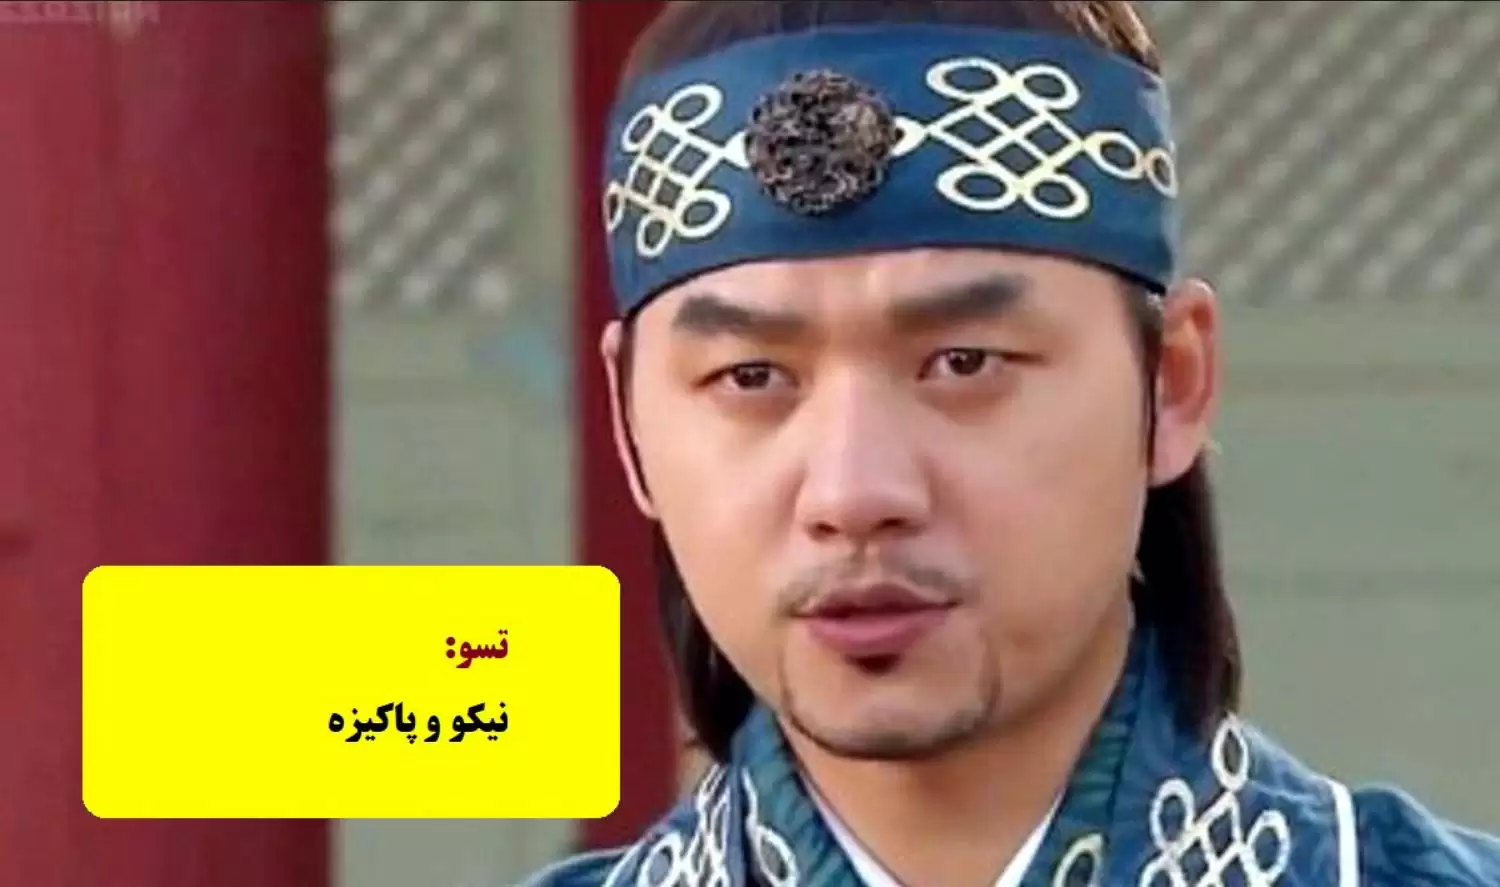  معنی اسامی شخصیت های سریال جومونگ به فارسی را می دانستید؟ + عکس